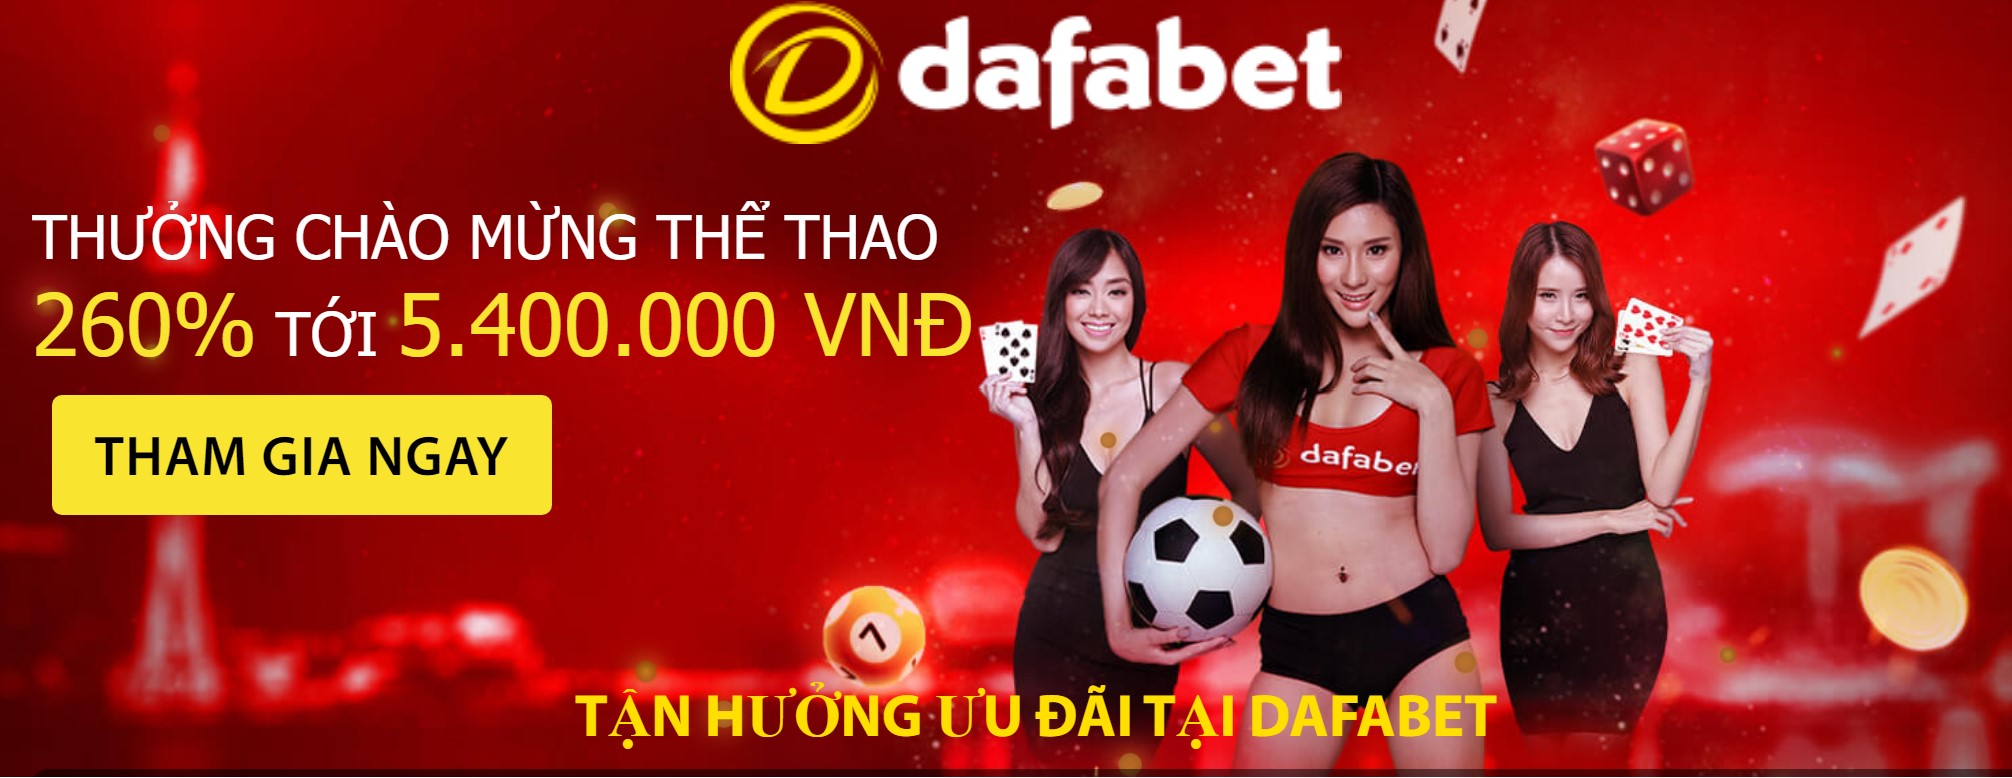 立即从越南获取您的 Dafabet 欢迎奖金